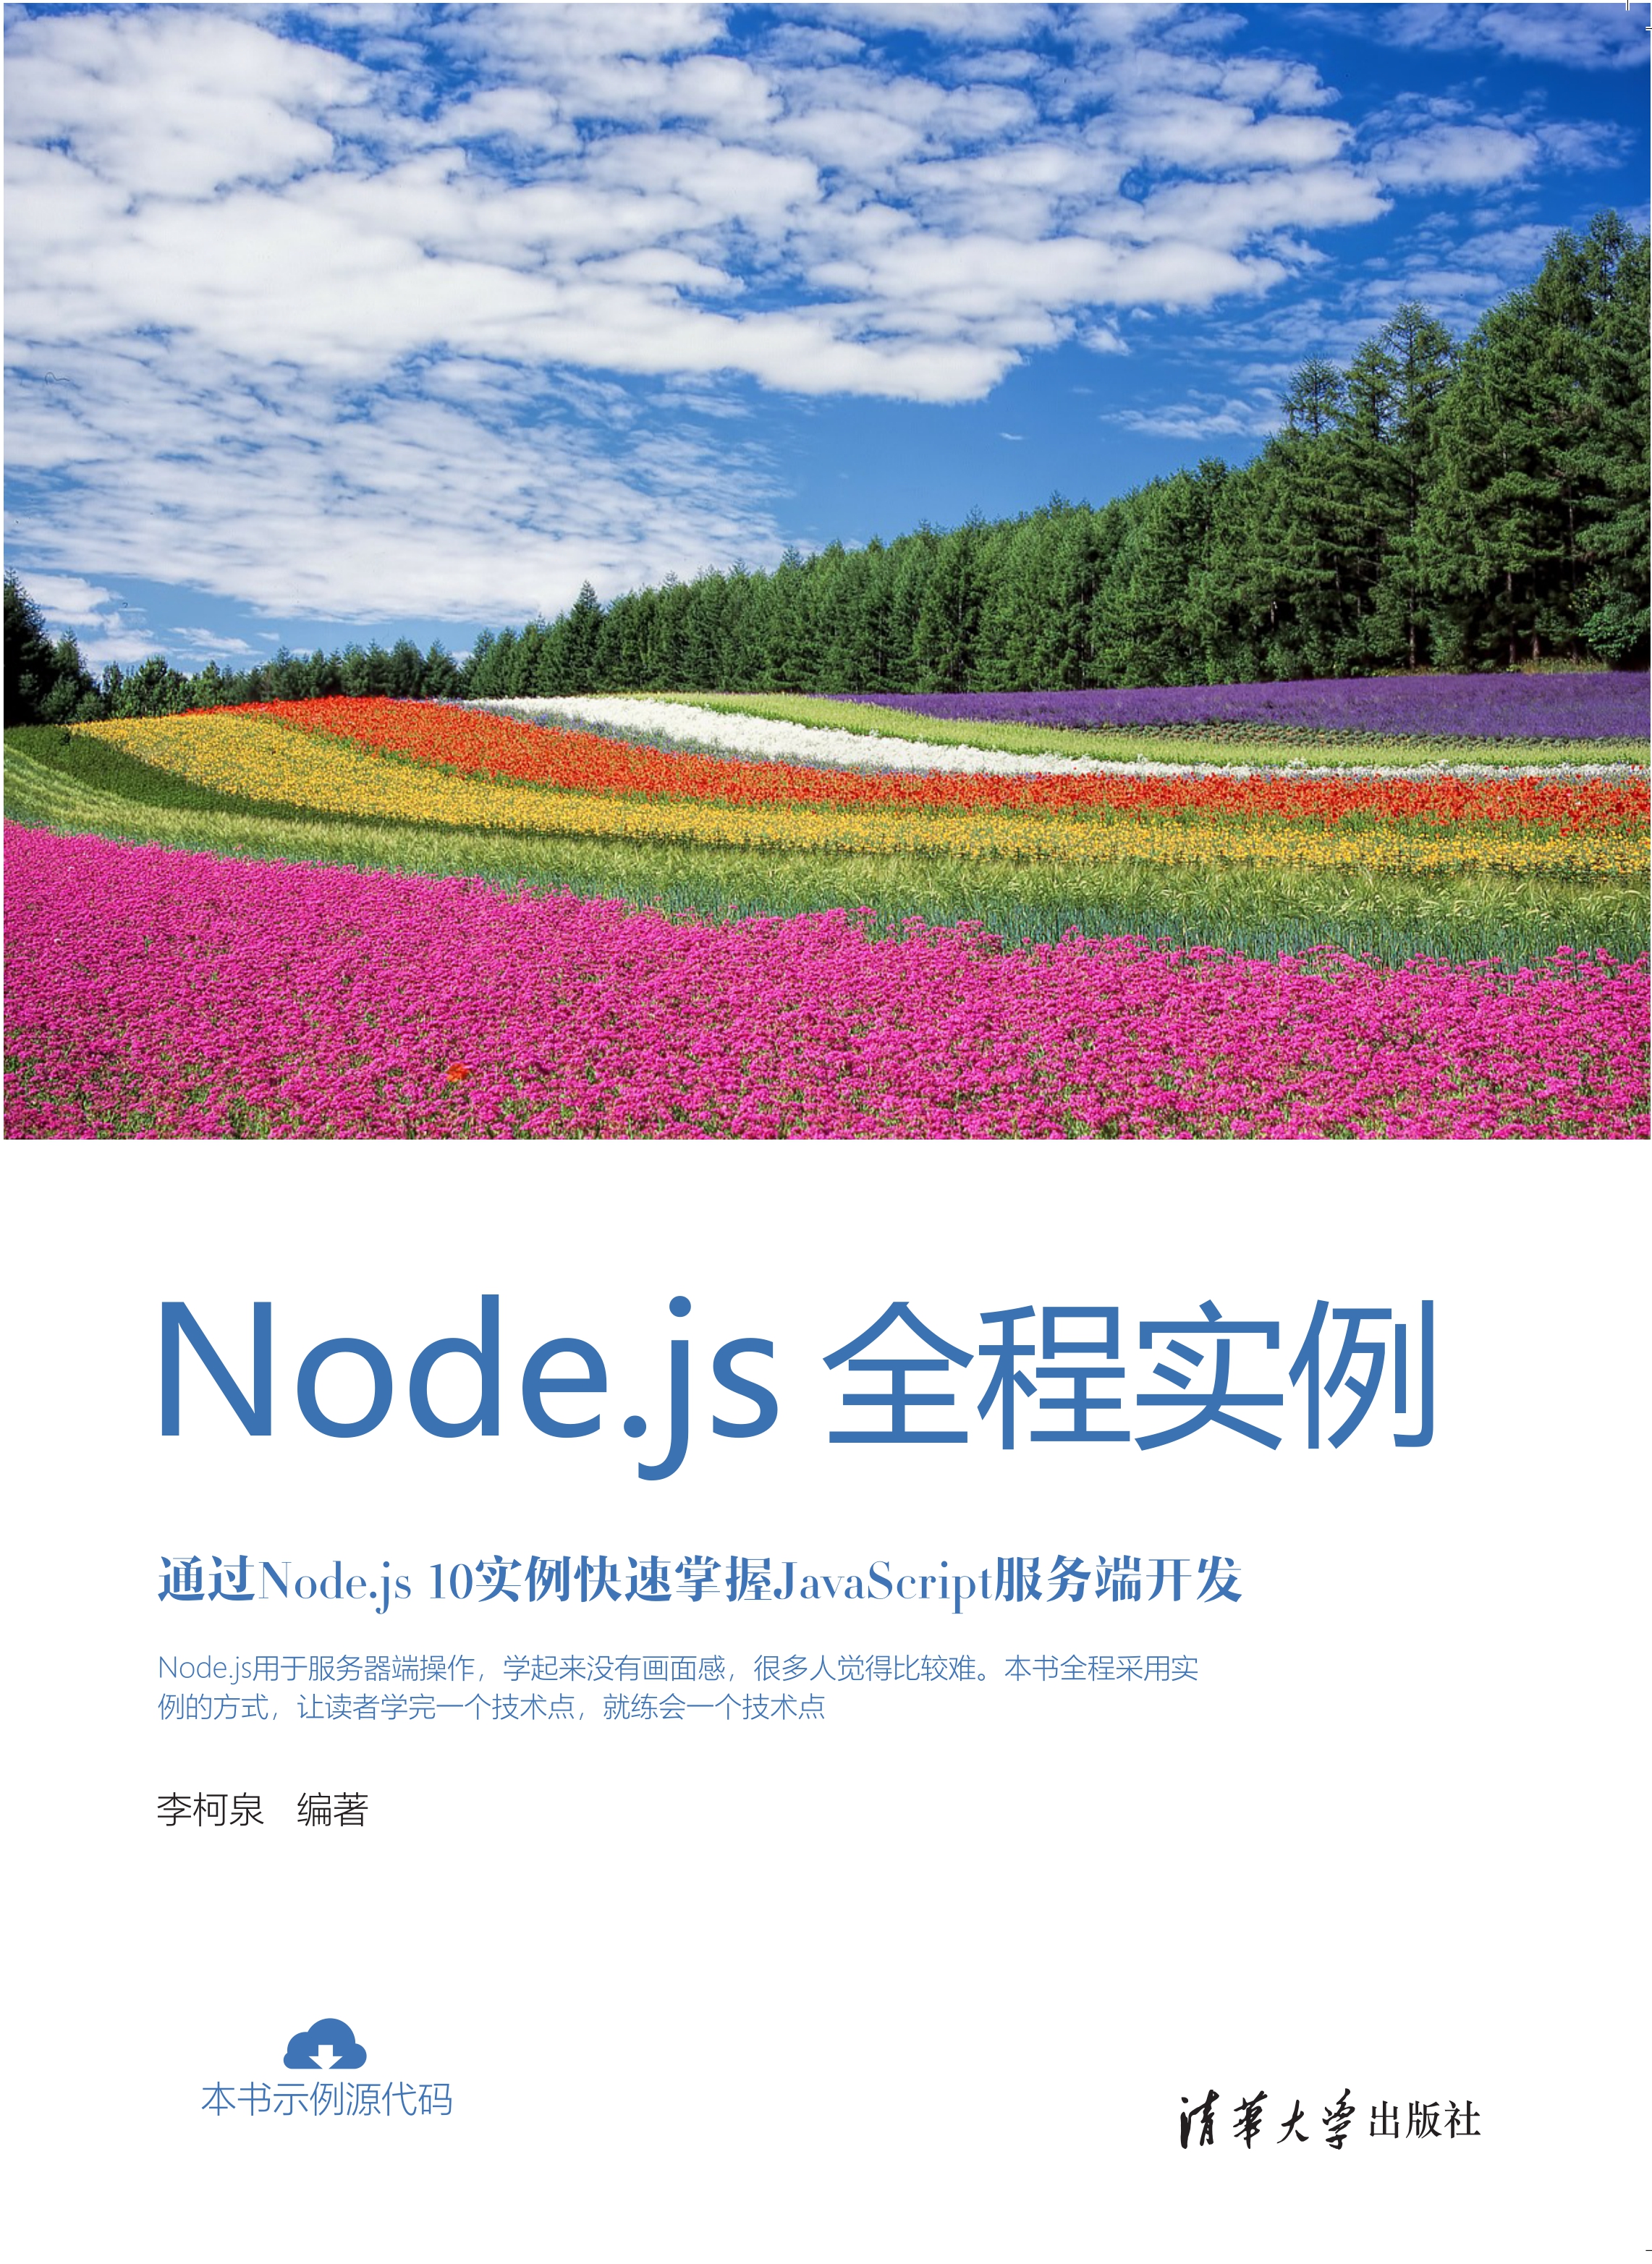 Node.js全程实例